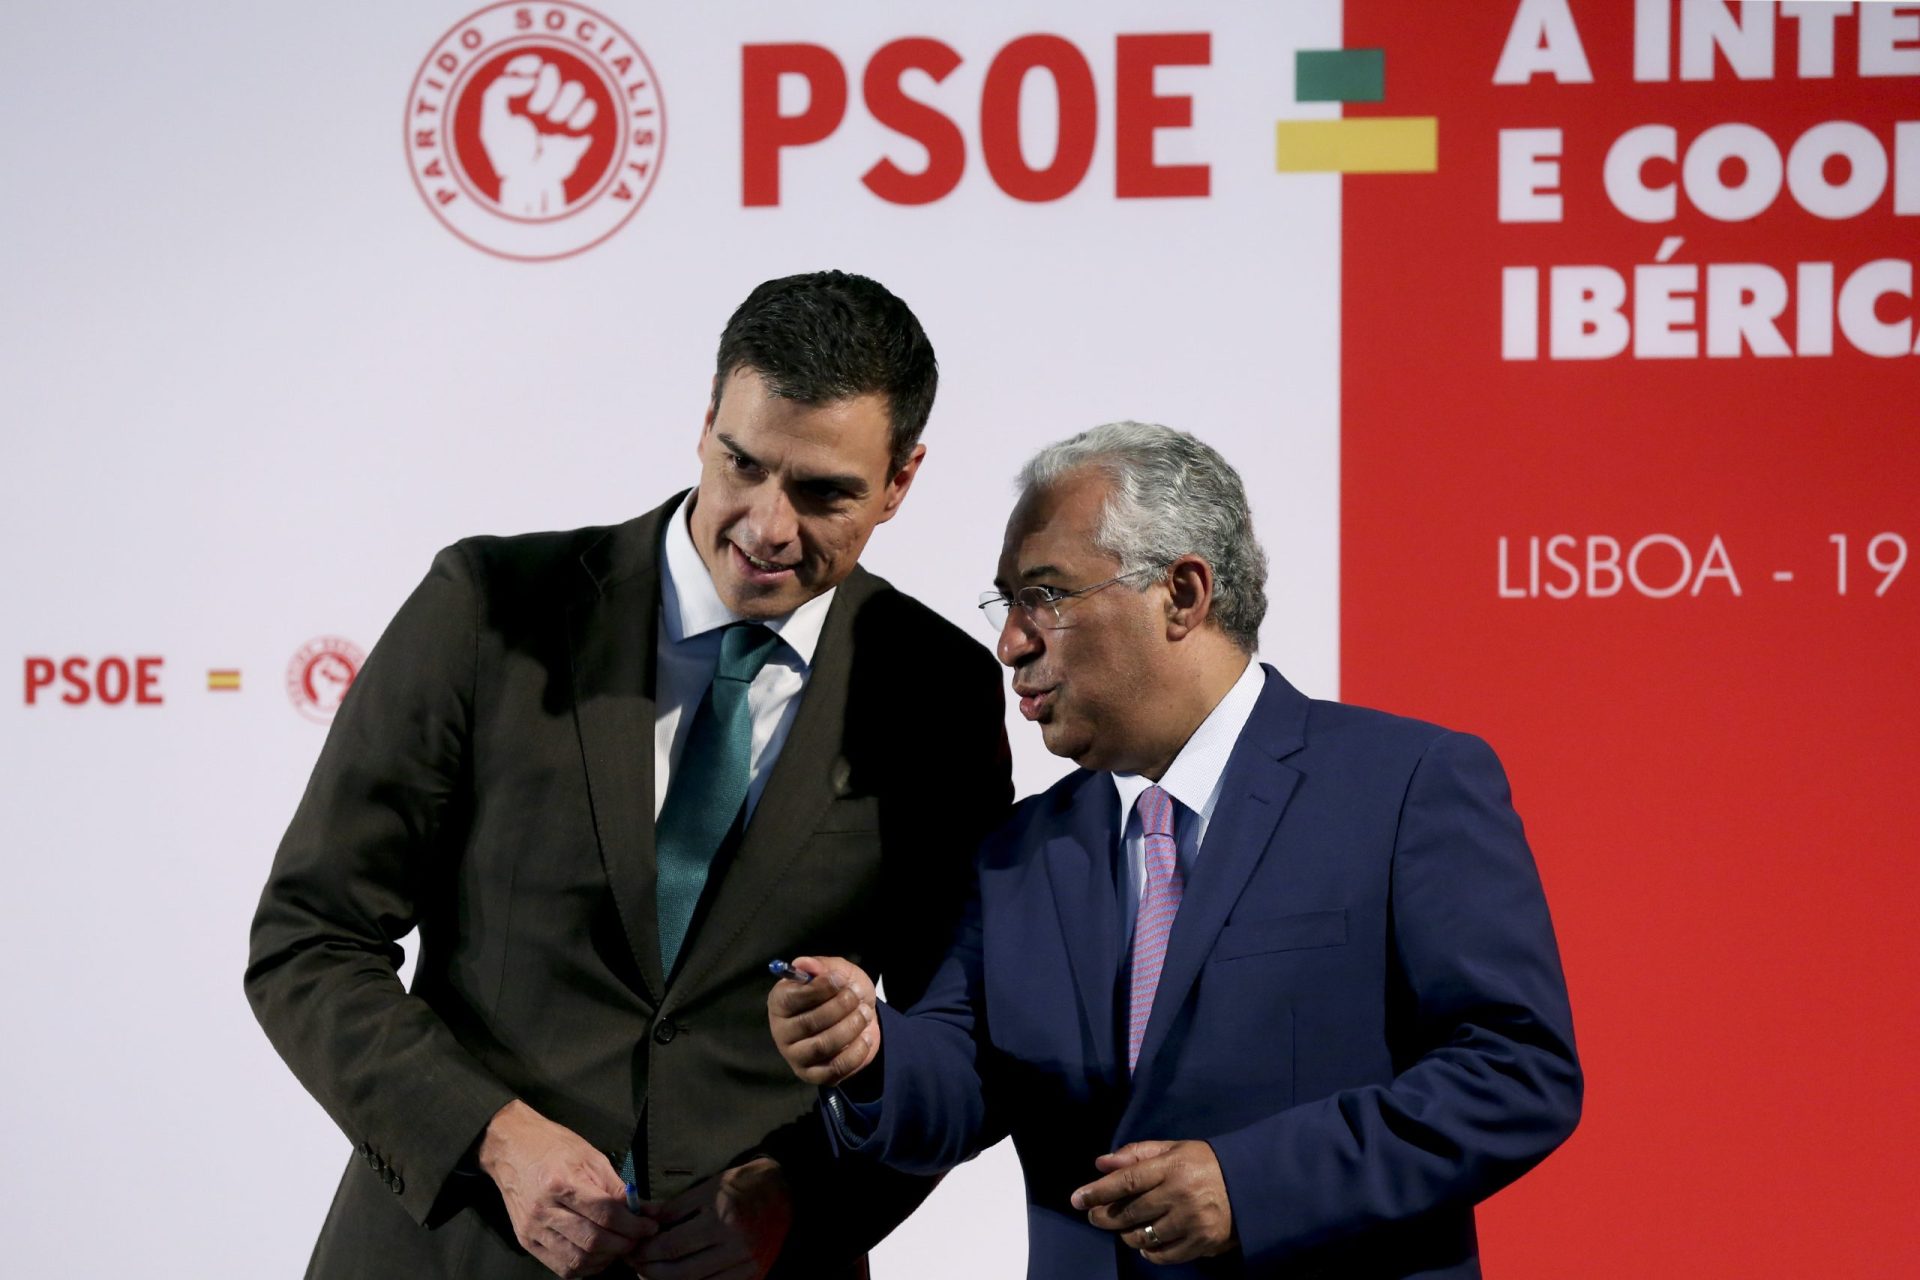 Sanchéz envia abraço a Costa e anuncia apoio ao PS